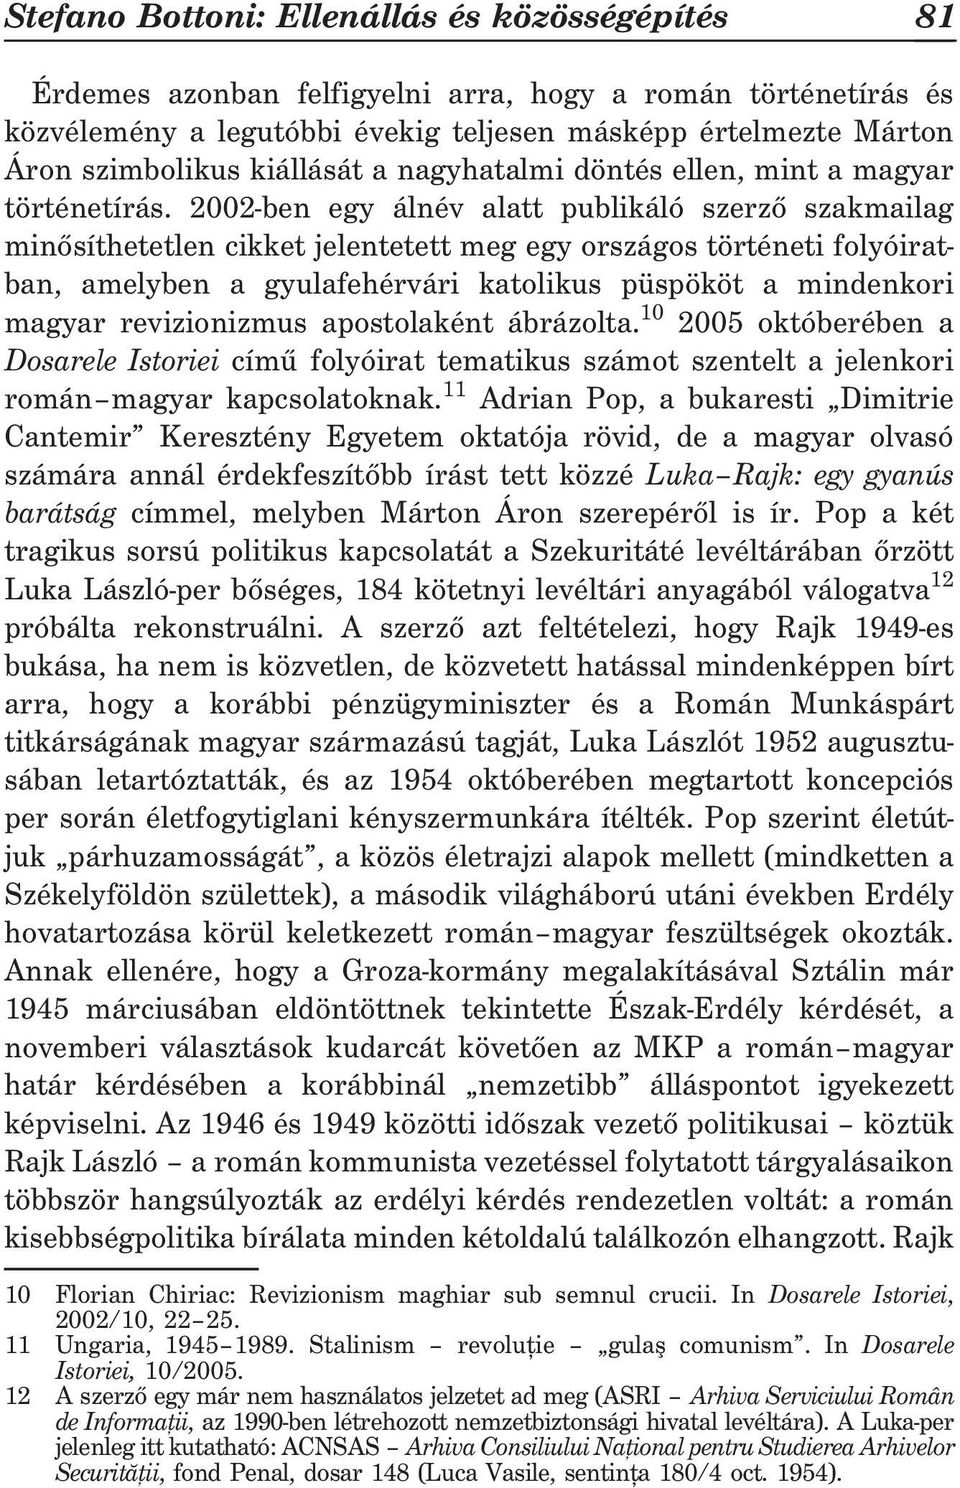 2002-ben egy álnév alatt publikáló szerzõ szakmailag minõsíthetetlen cikket jelentetett meg egy országos történeti folyóiratban, amelyben a gyulafehérvári katolikus püspököt a mindenkori magyar